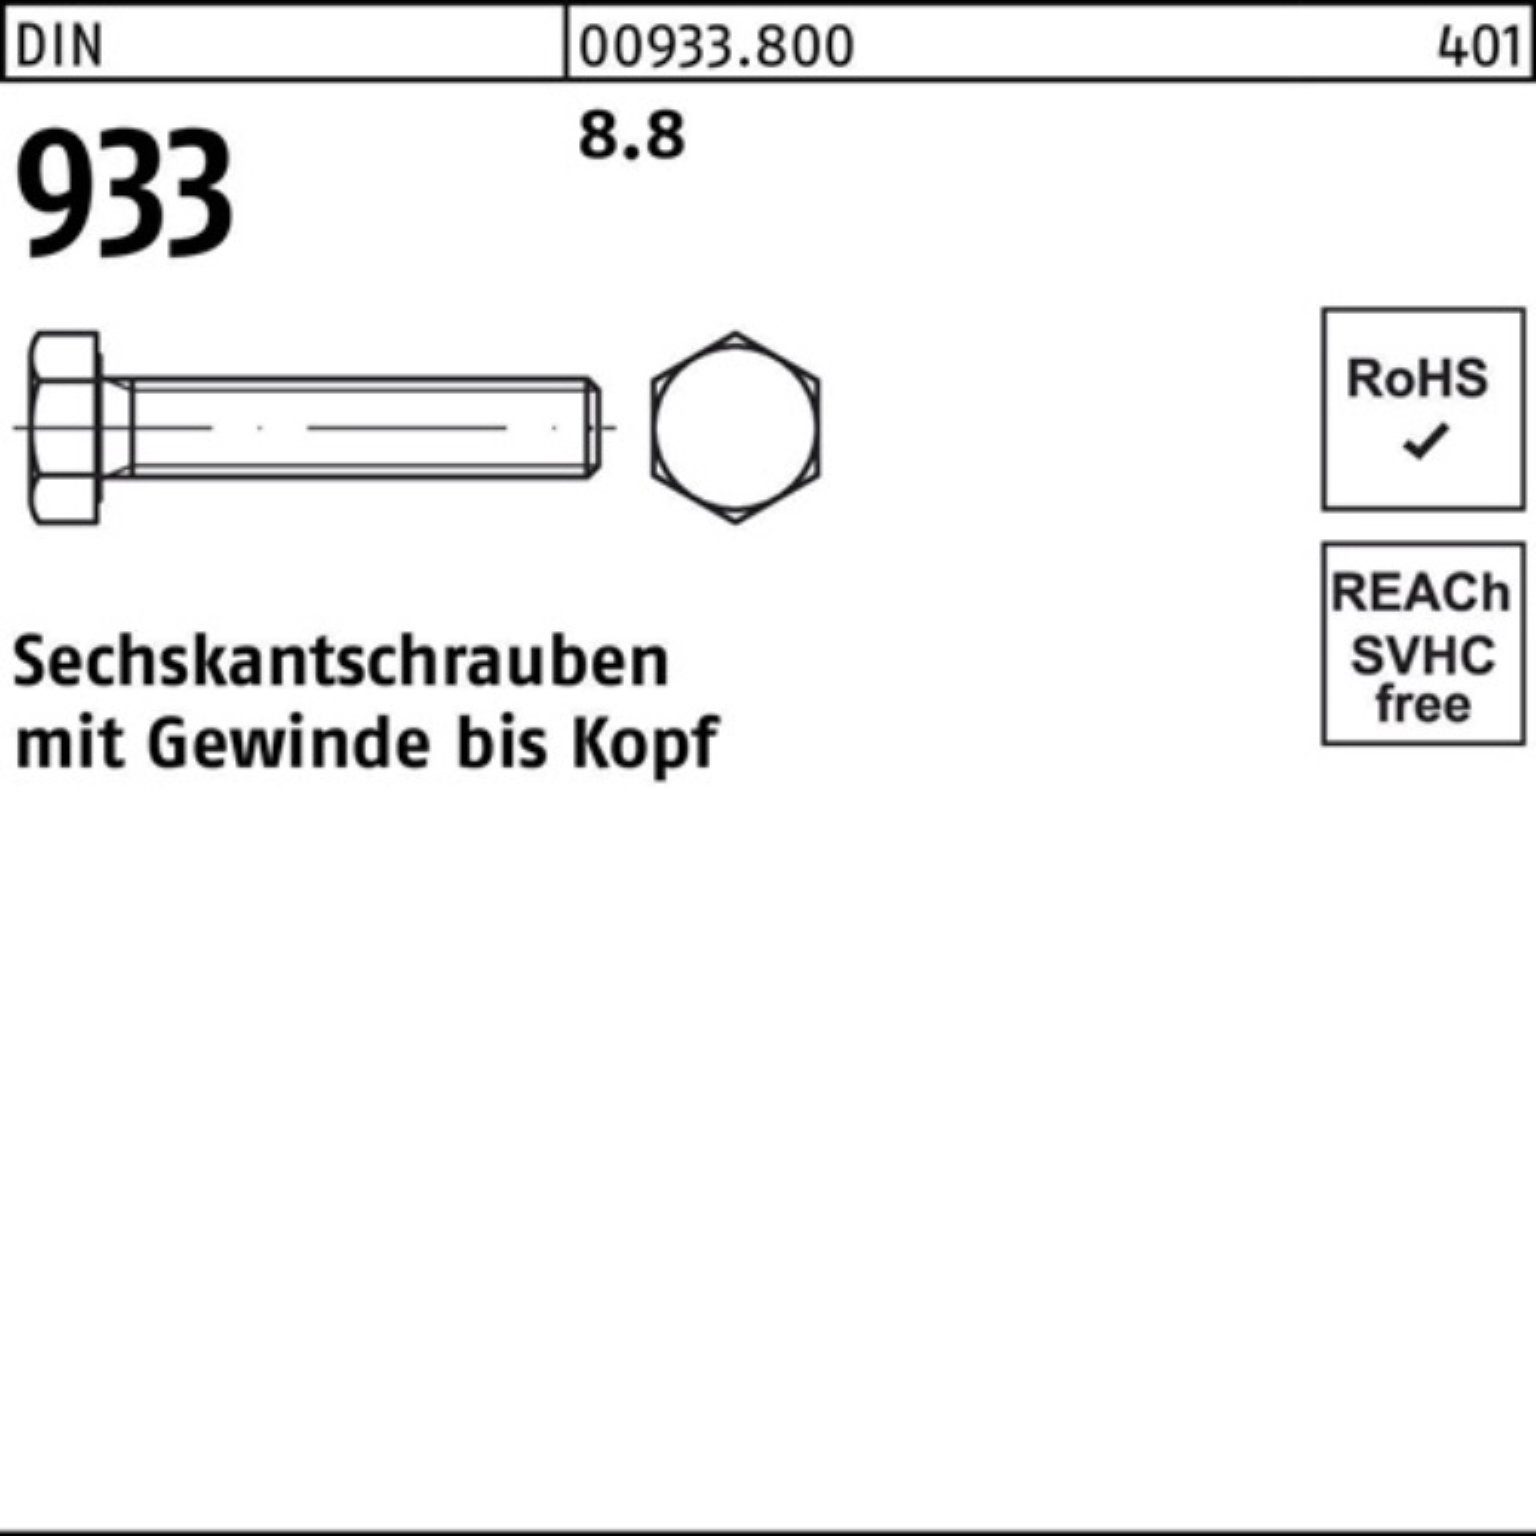 8.8 M24x DIN Sechskantschraube Pack 933 Stück 170 VG 933 Sechskantschraube DIN Reyher 1 100er